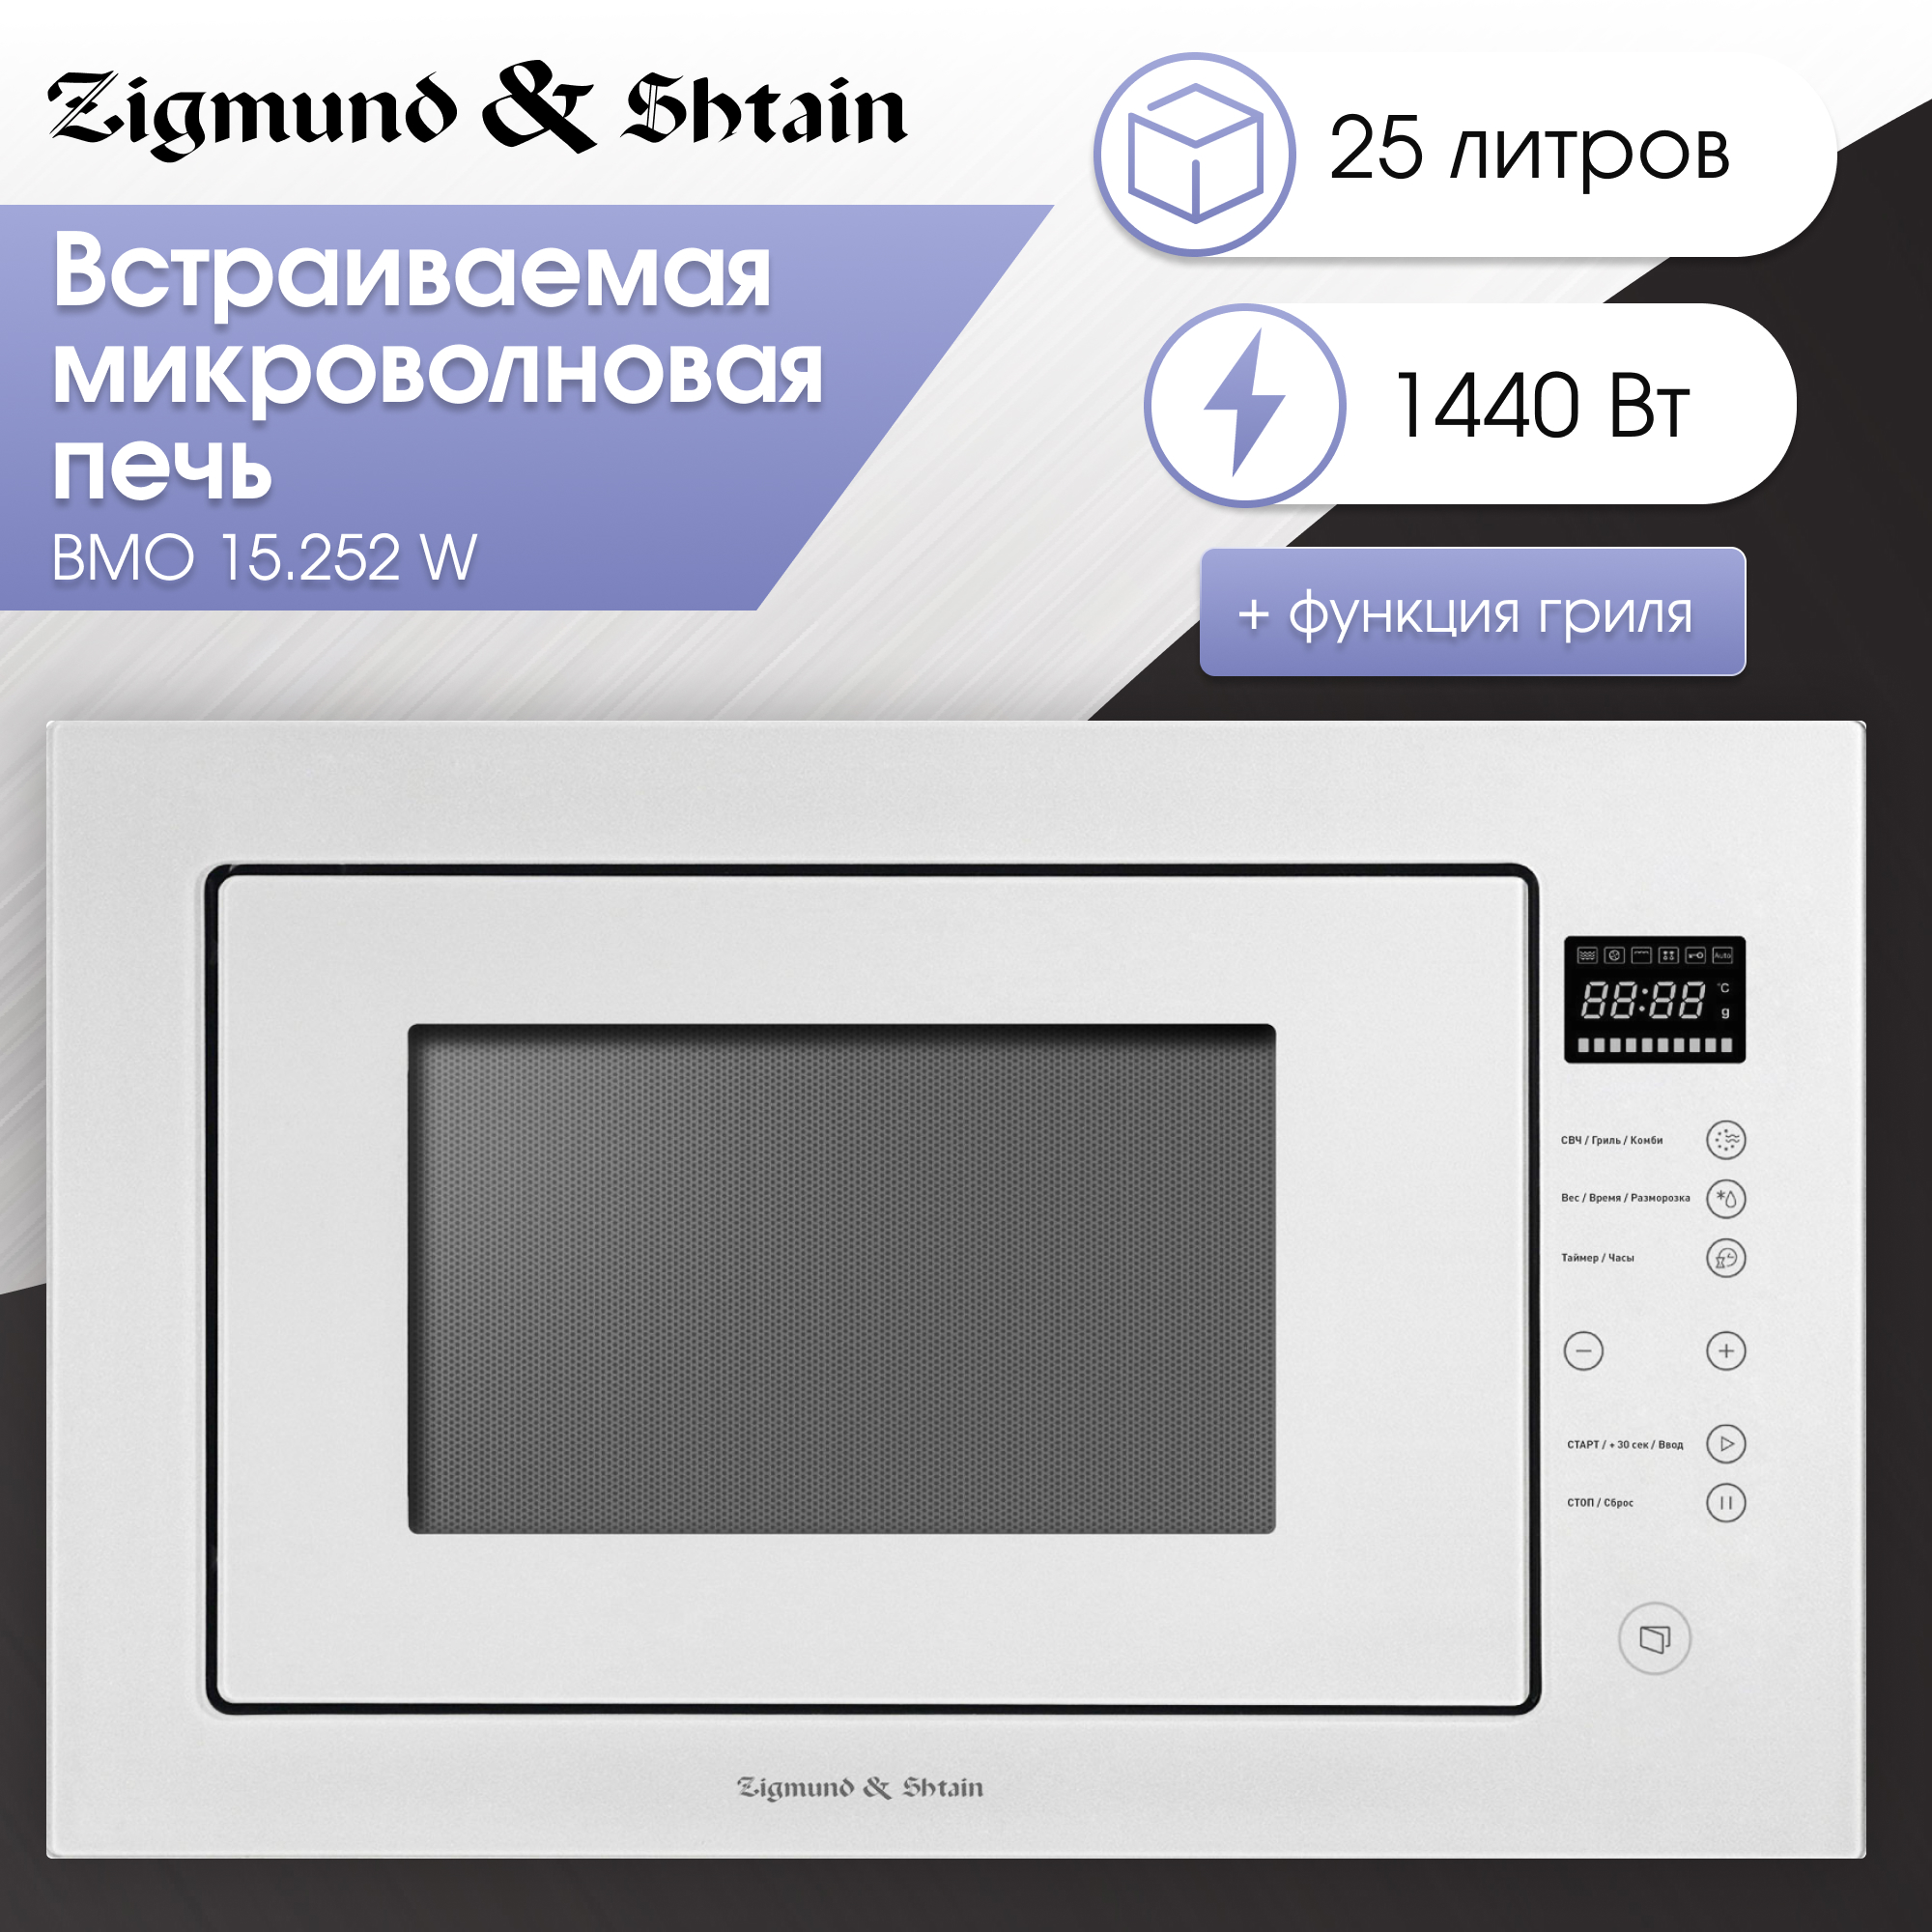 Встраиваемая микроволновая печь Zigmund & Shtain BMO 15.252 W White микроволновая печь xiaomi mijia microwave oven white mwb020